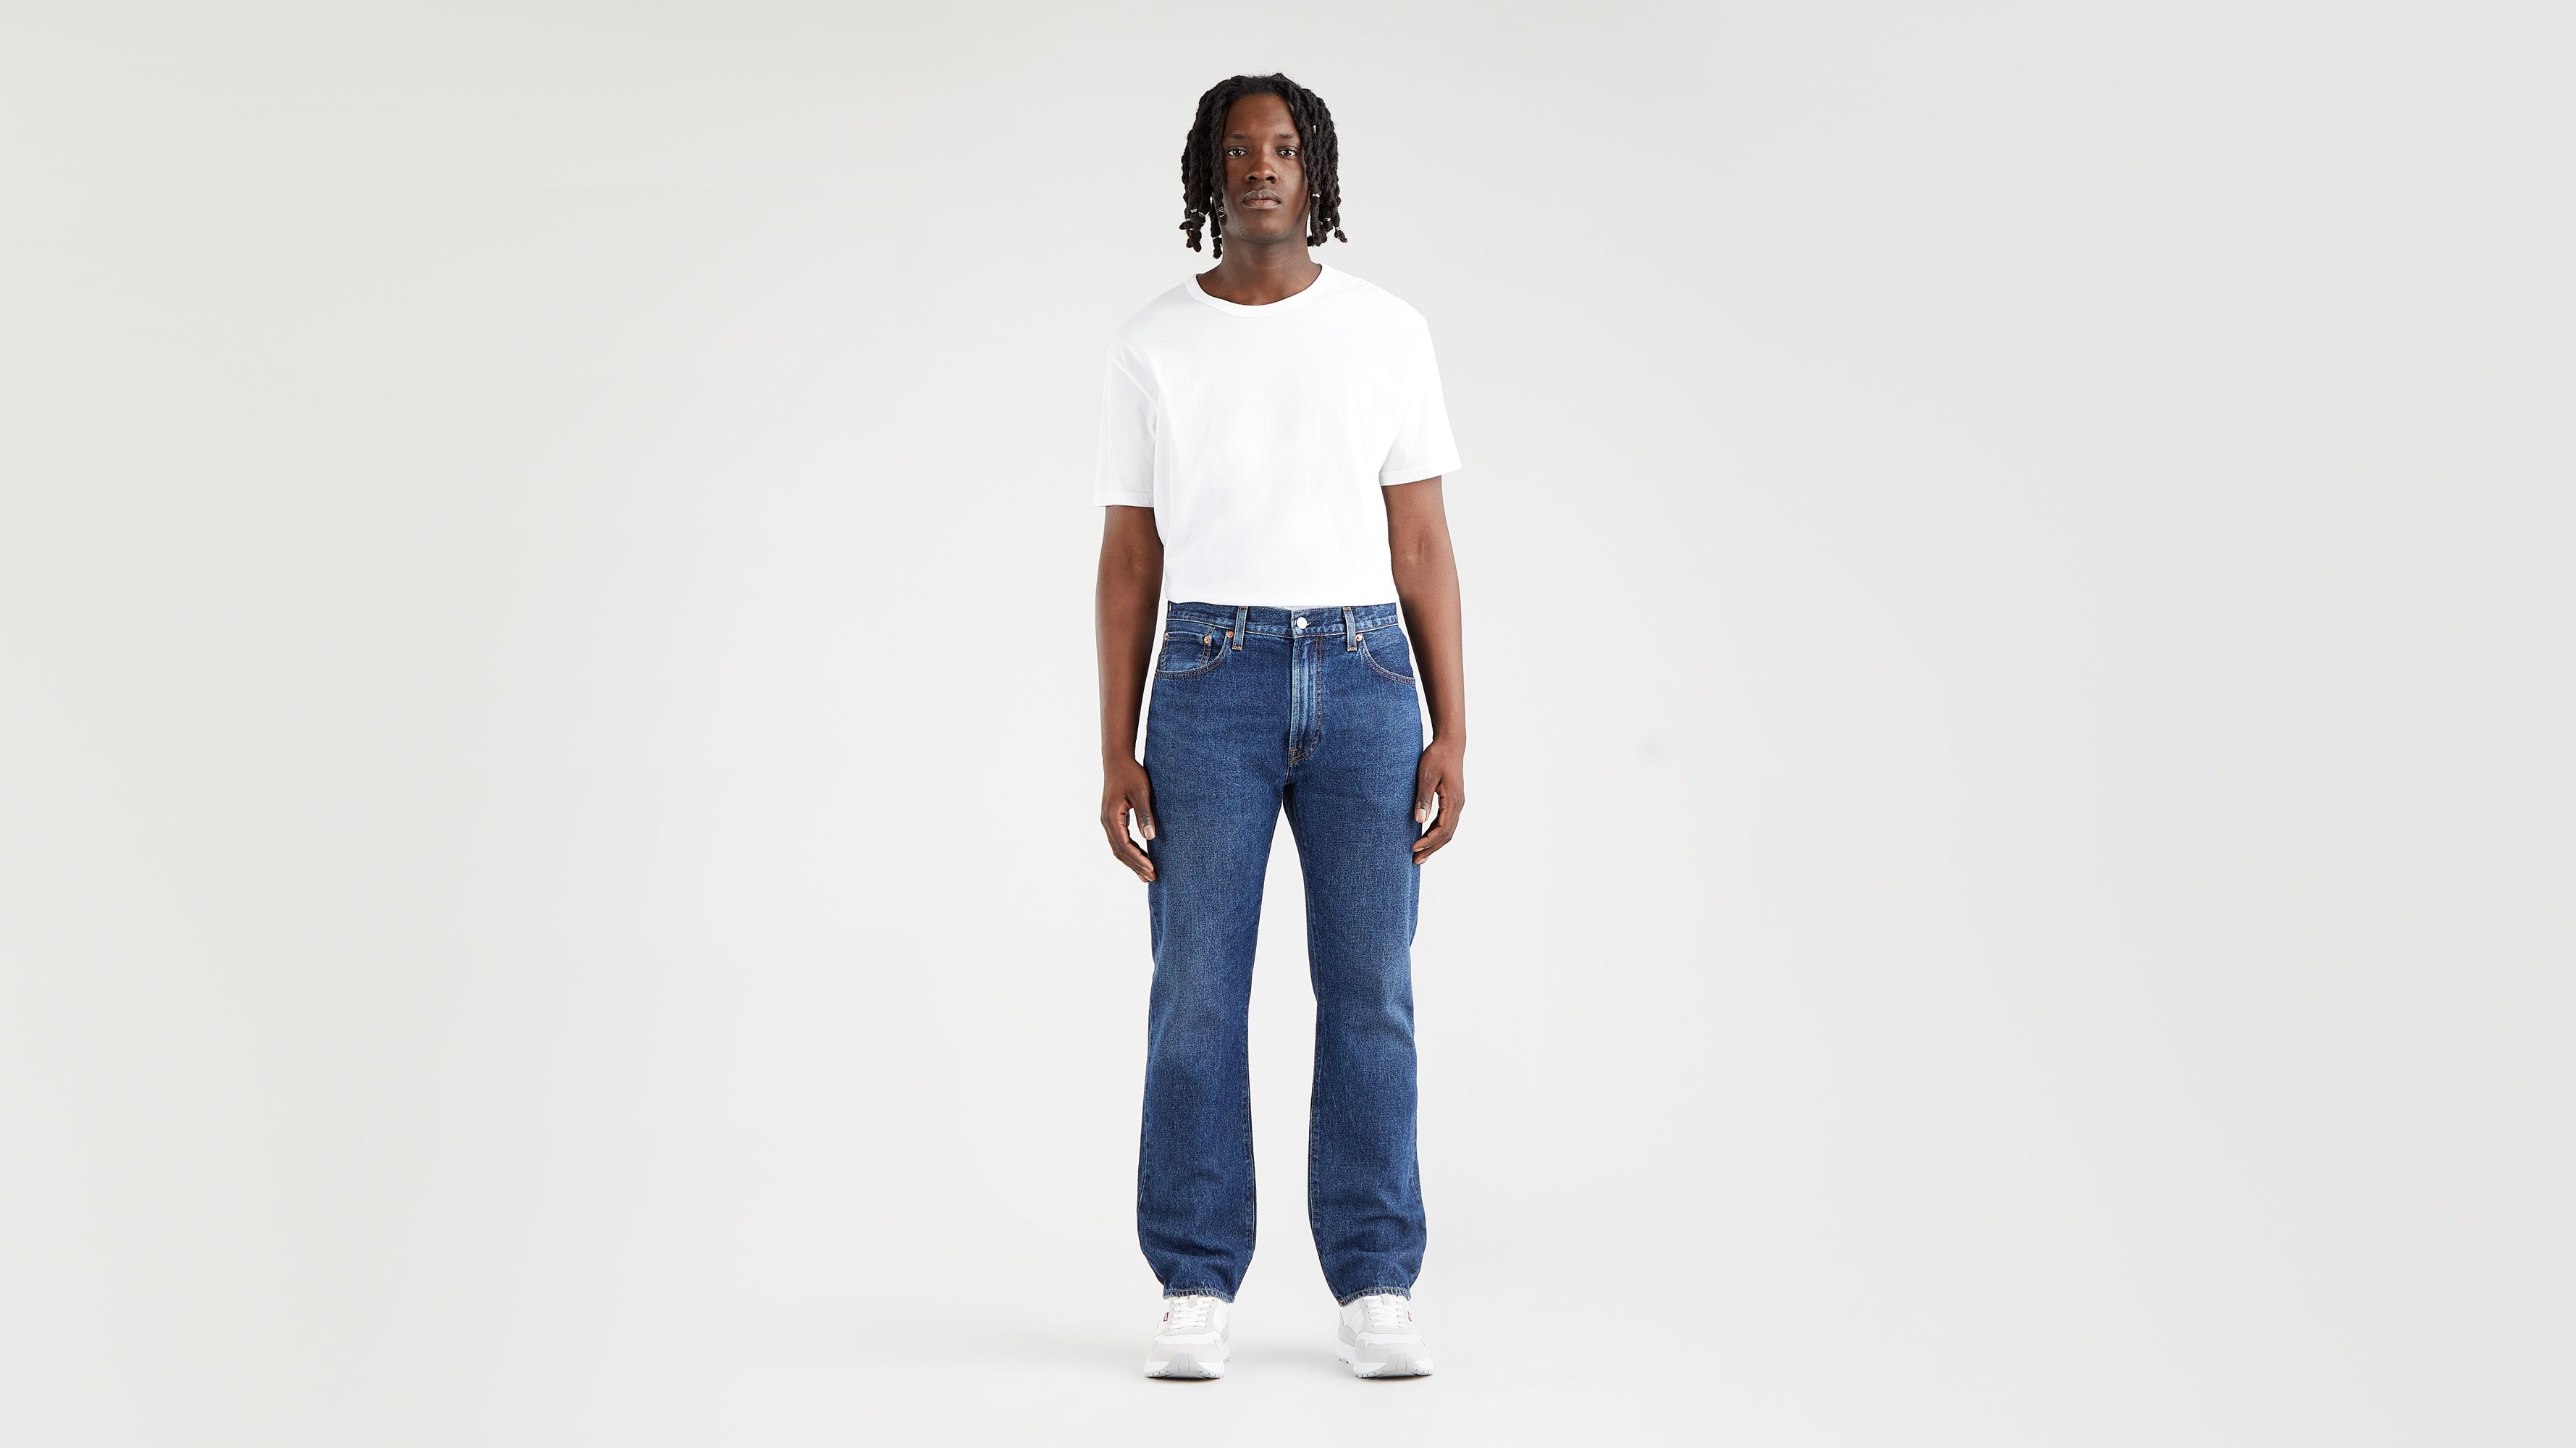 551™Z Authentic Straight Fit Men's Jeans